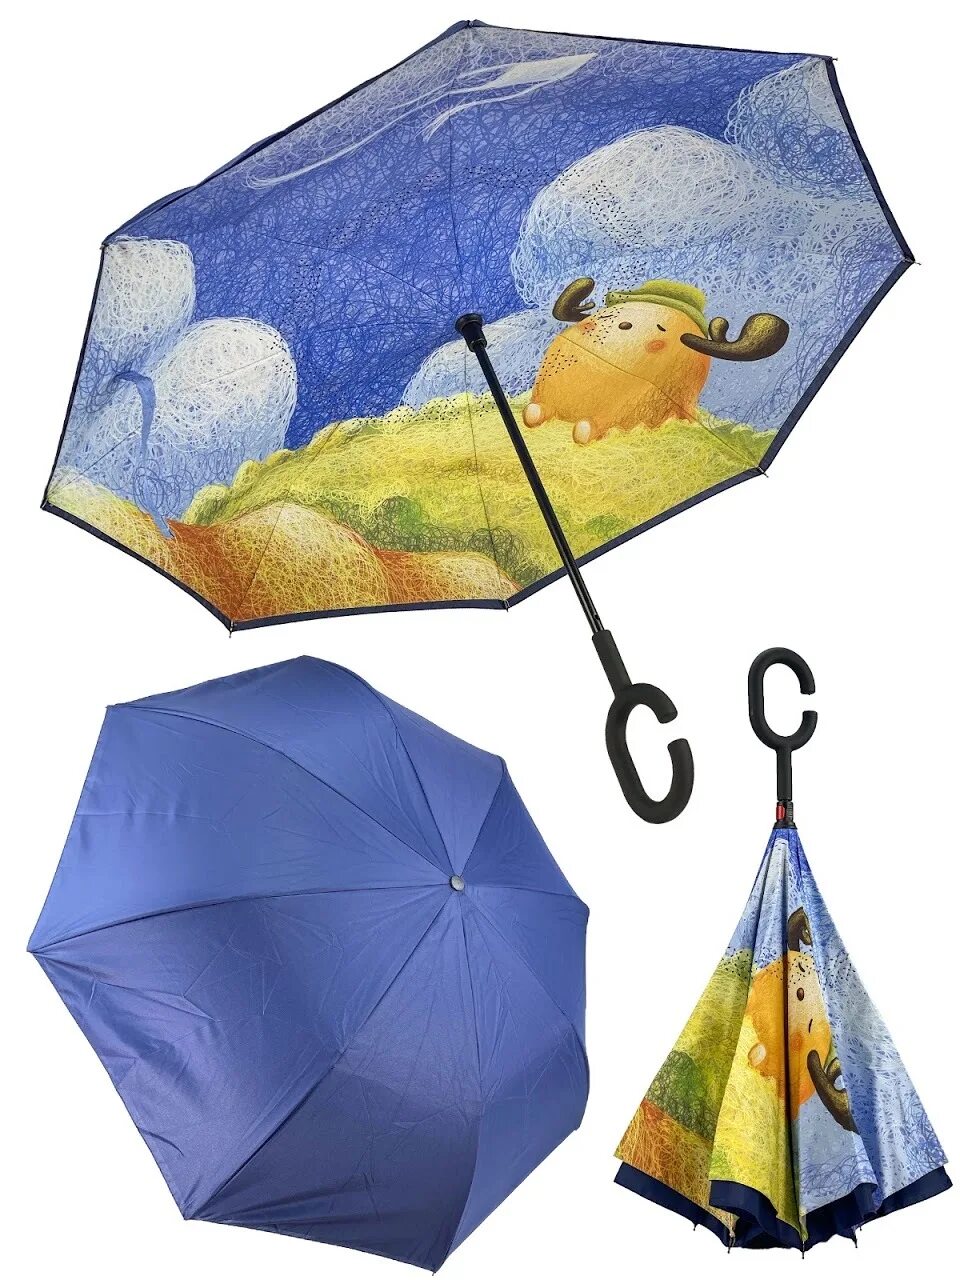 Зонтик. Волшебный зонтик. Сказочный зонтик. Зонт like goods. Сказка зонтики